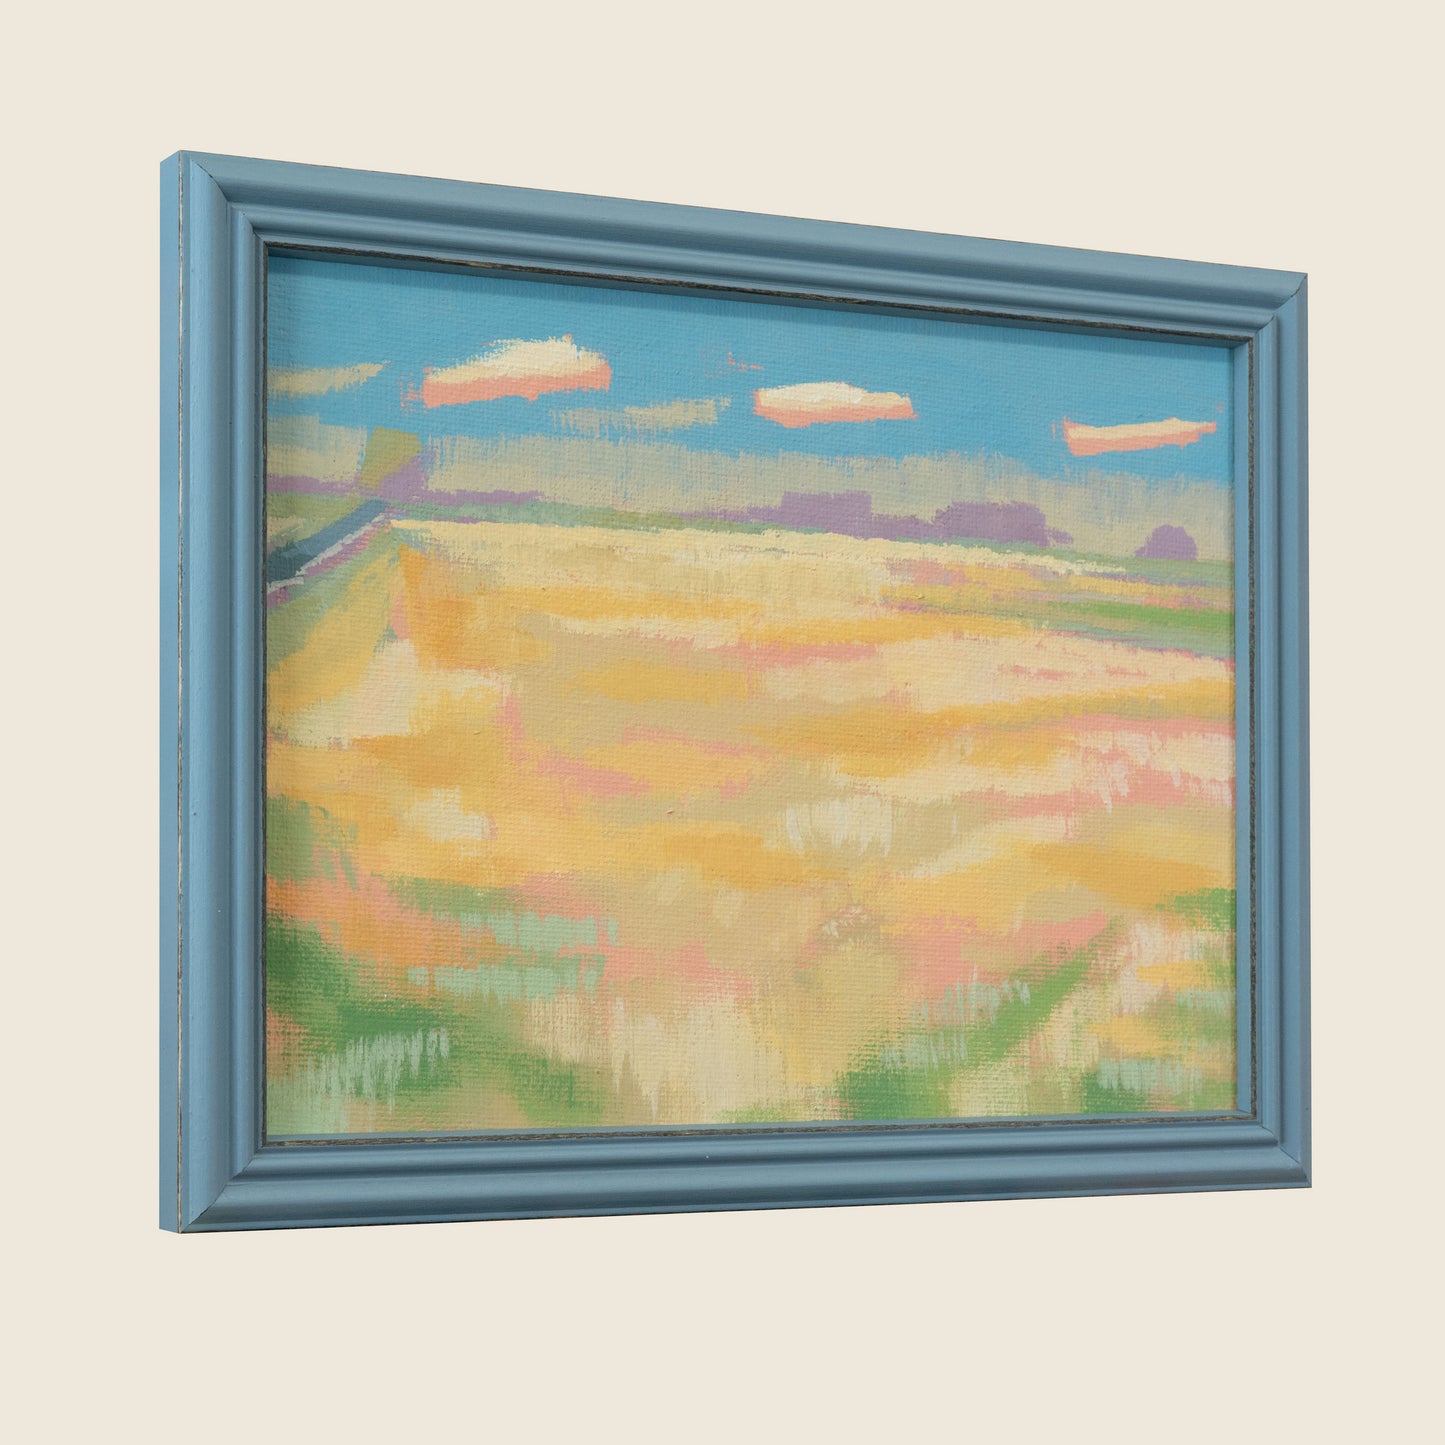 "Light", unique, painting, hand-painted unique piece, 22.3 x 17.3 cm, with picture frame